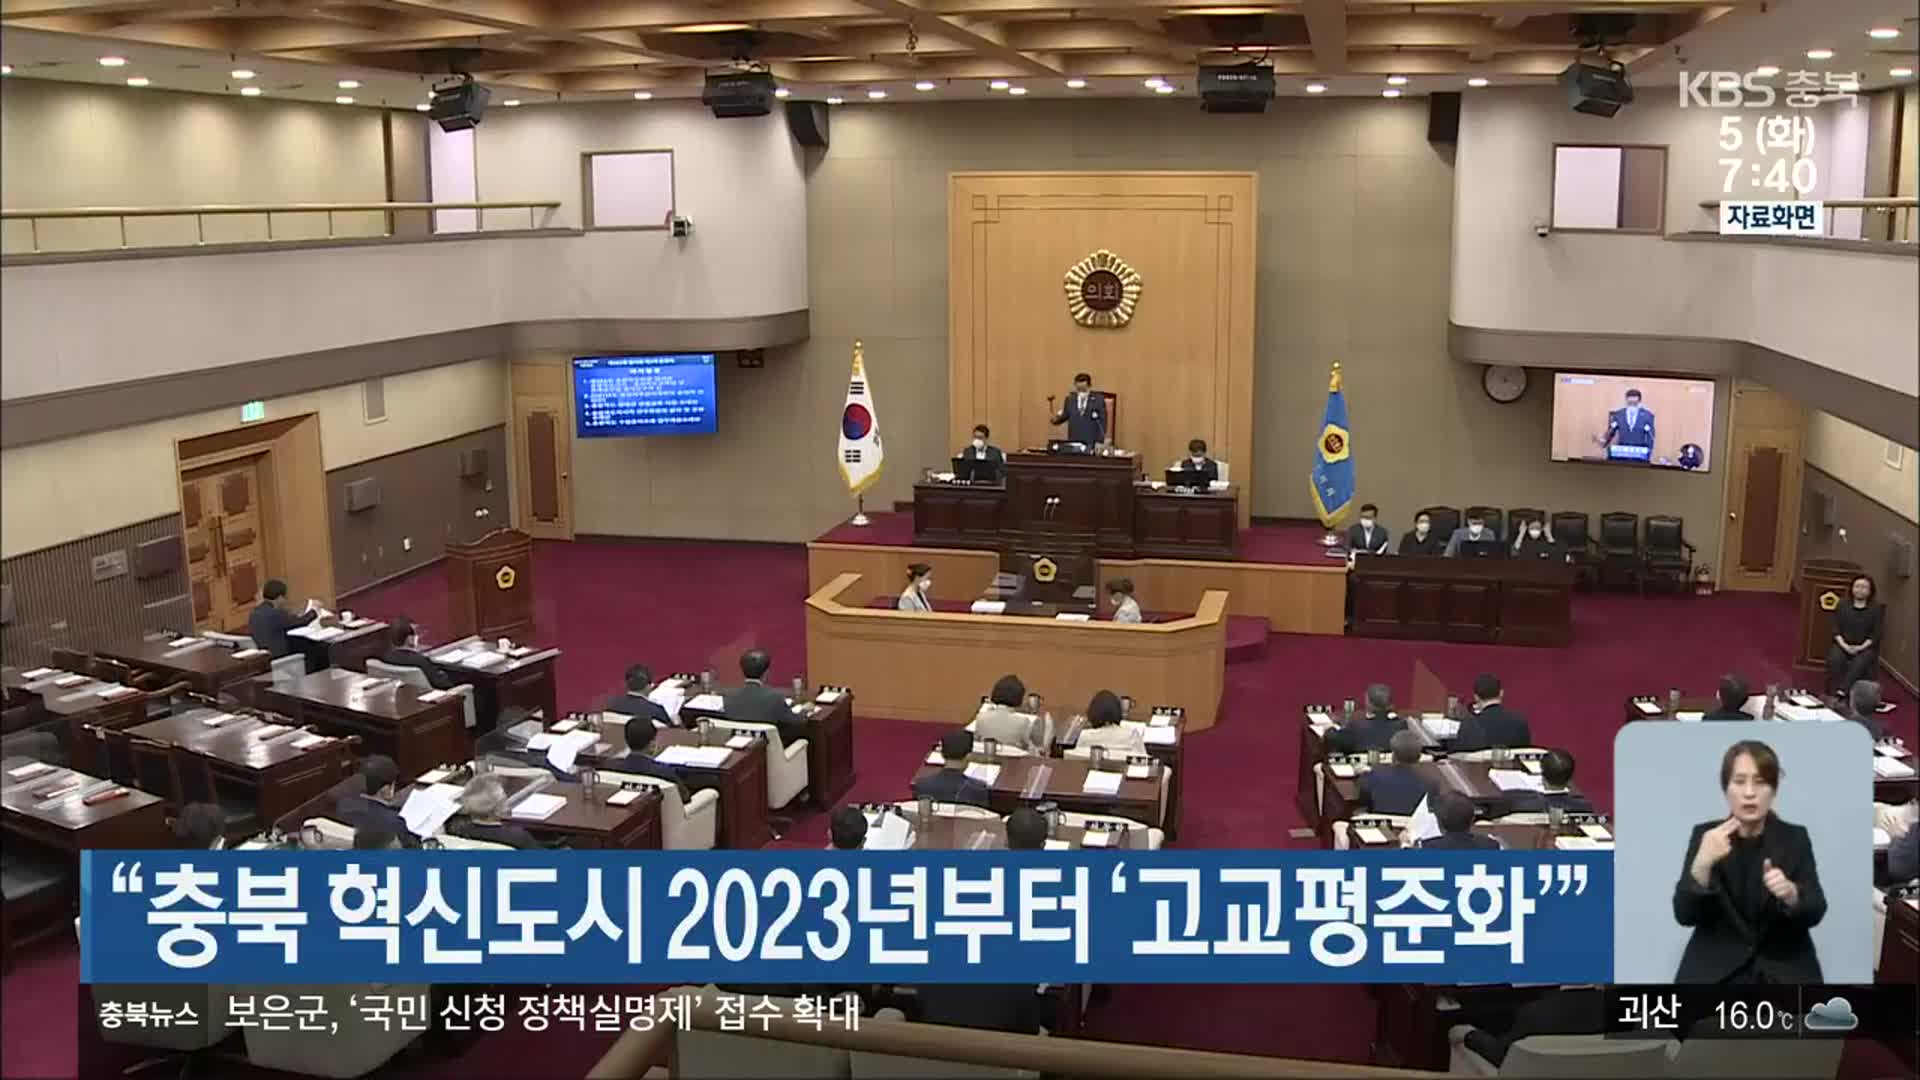 “충북 혁신도시 2023년부터 ‘고교평준화’”